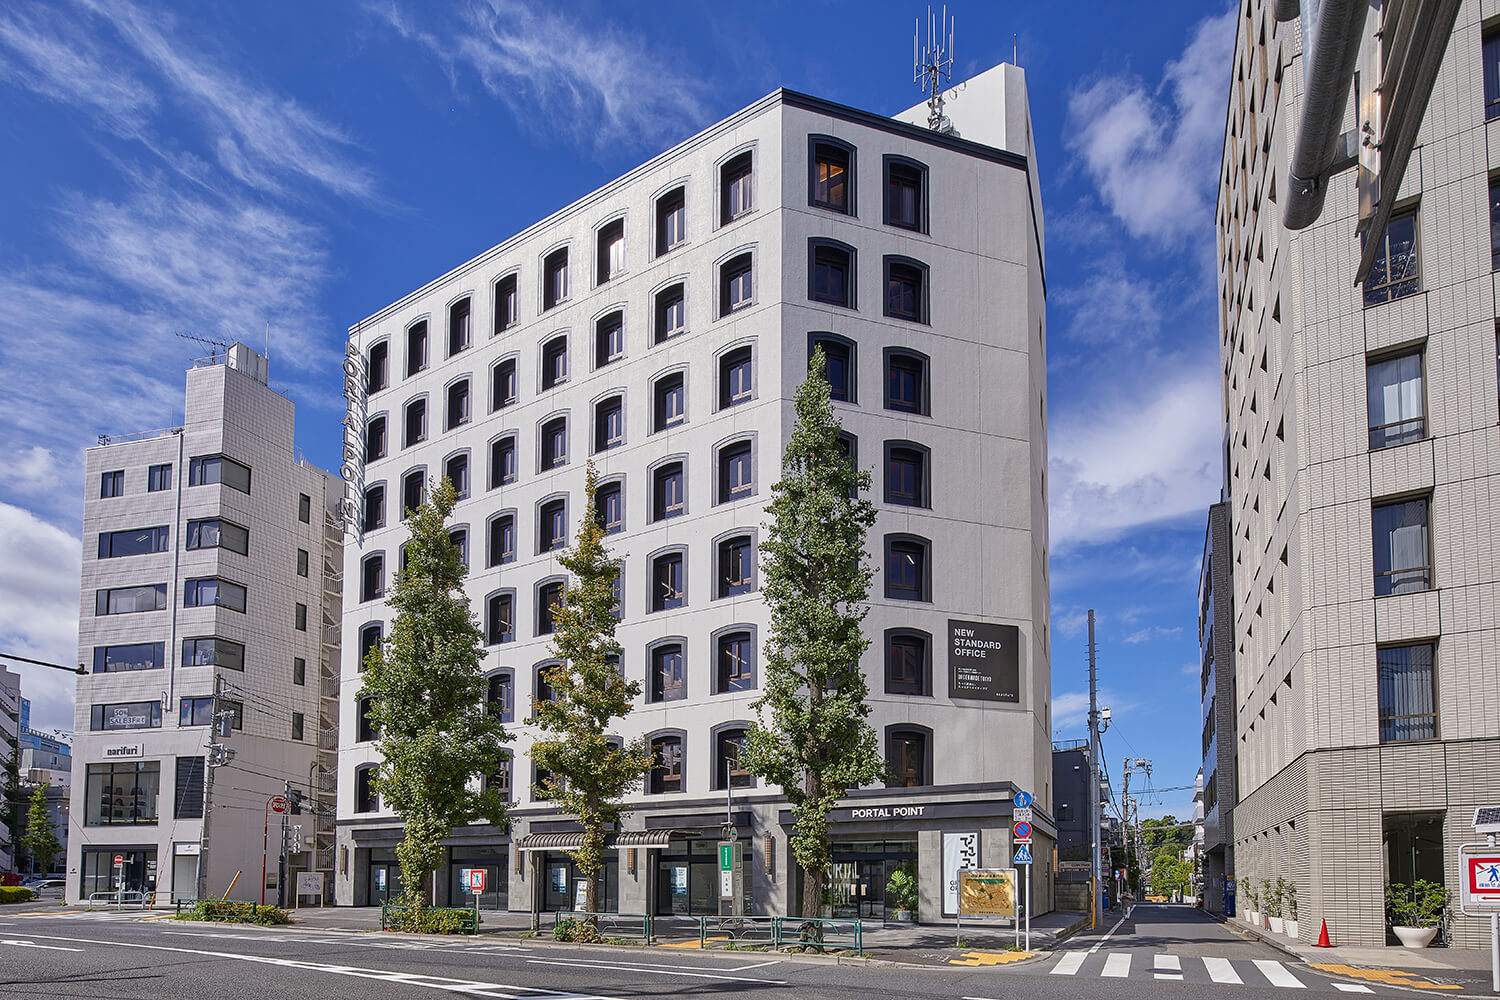 リアルゲイト、渋谷エリアで進める市民共創まちづくりサービス「shibuya good pass」のパートナー企業として、シェアオフィスサービス「good place」のテスト運用を7月19日より開始のサブ画像2